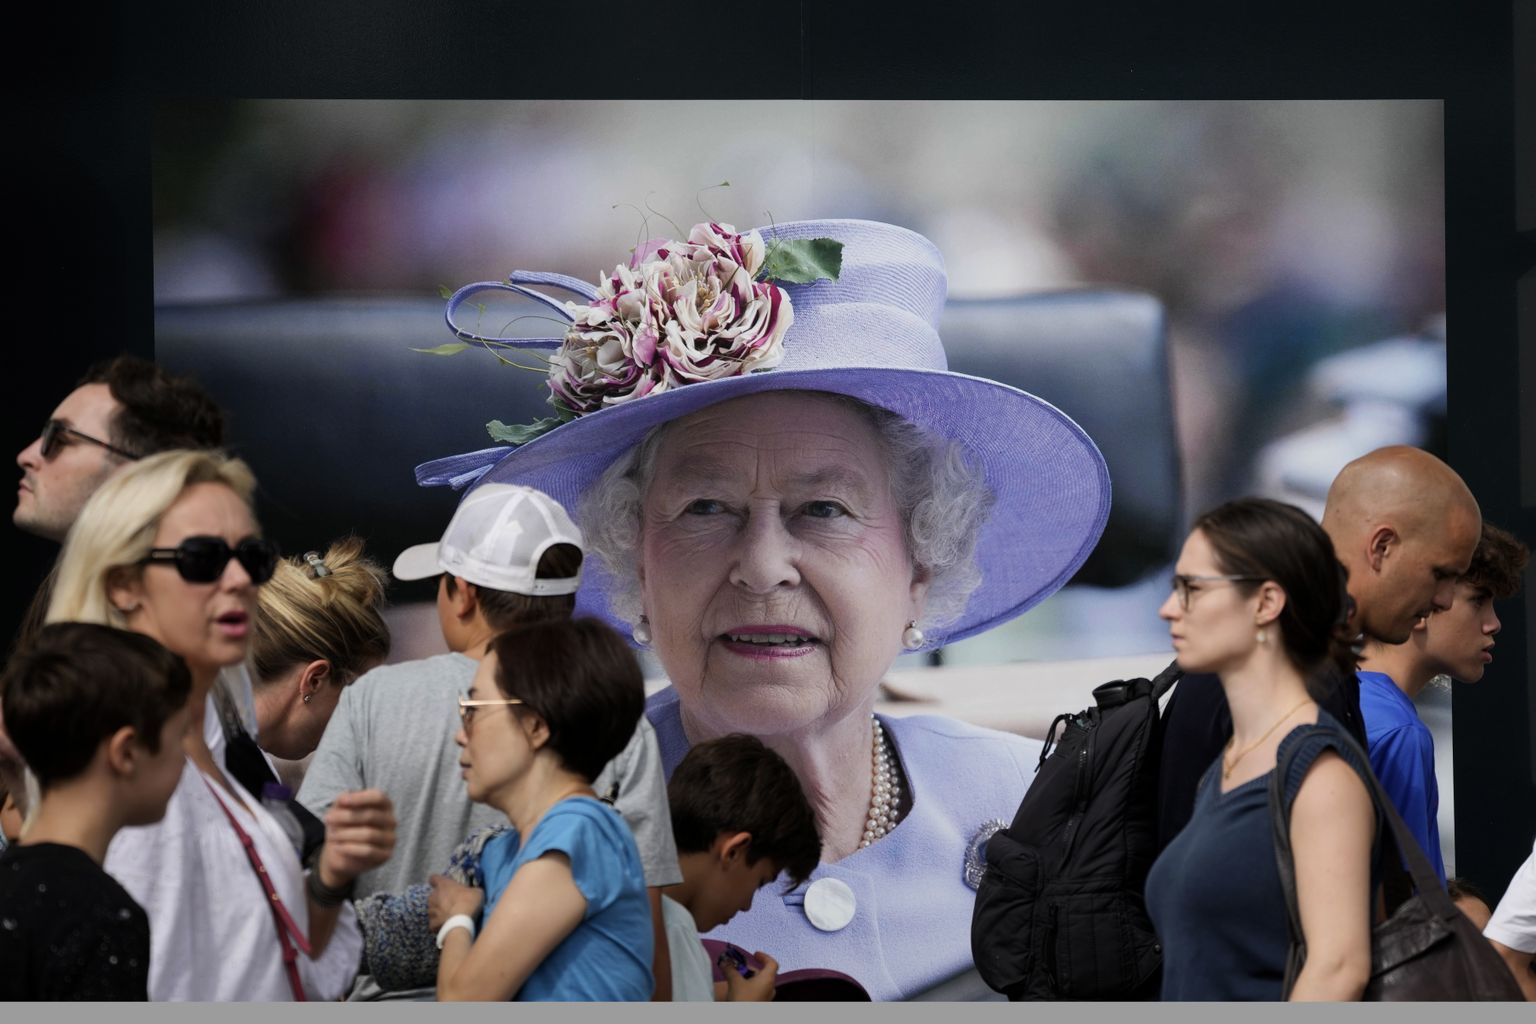 Inimesed kõndimas kuninganna Elizabeth II pildi ees. Pilt on illustreeriv.